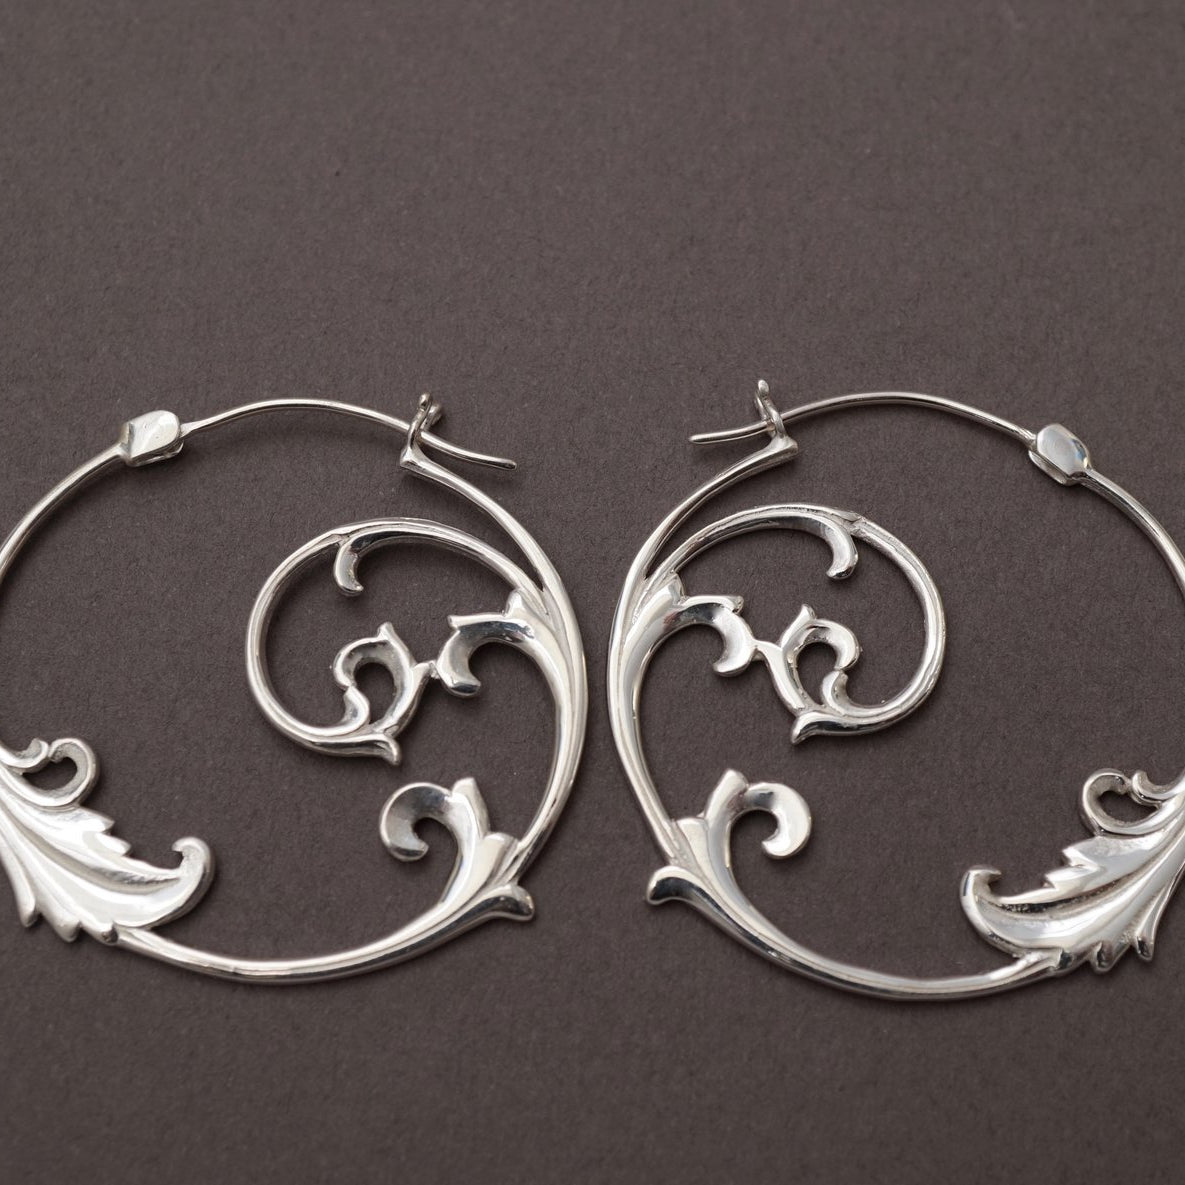 Floral Hoop Earrings Sterling Silver